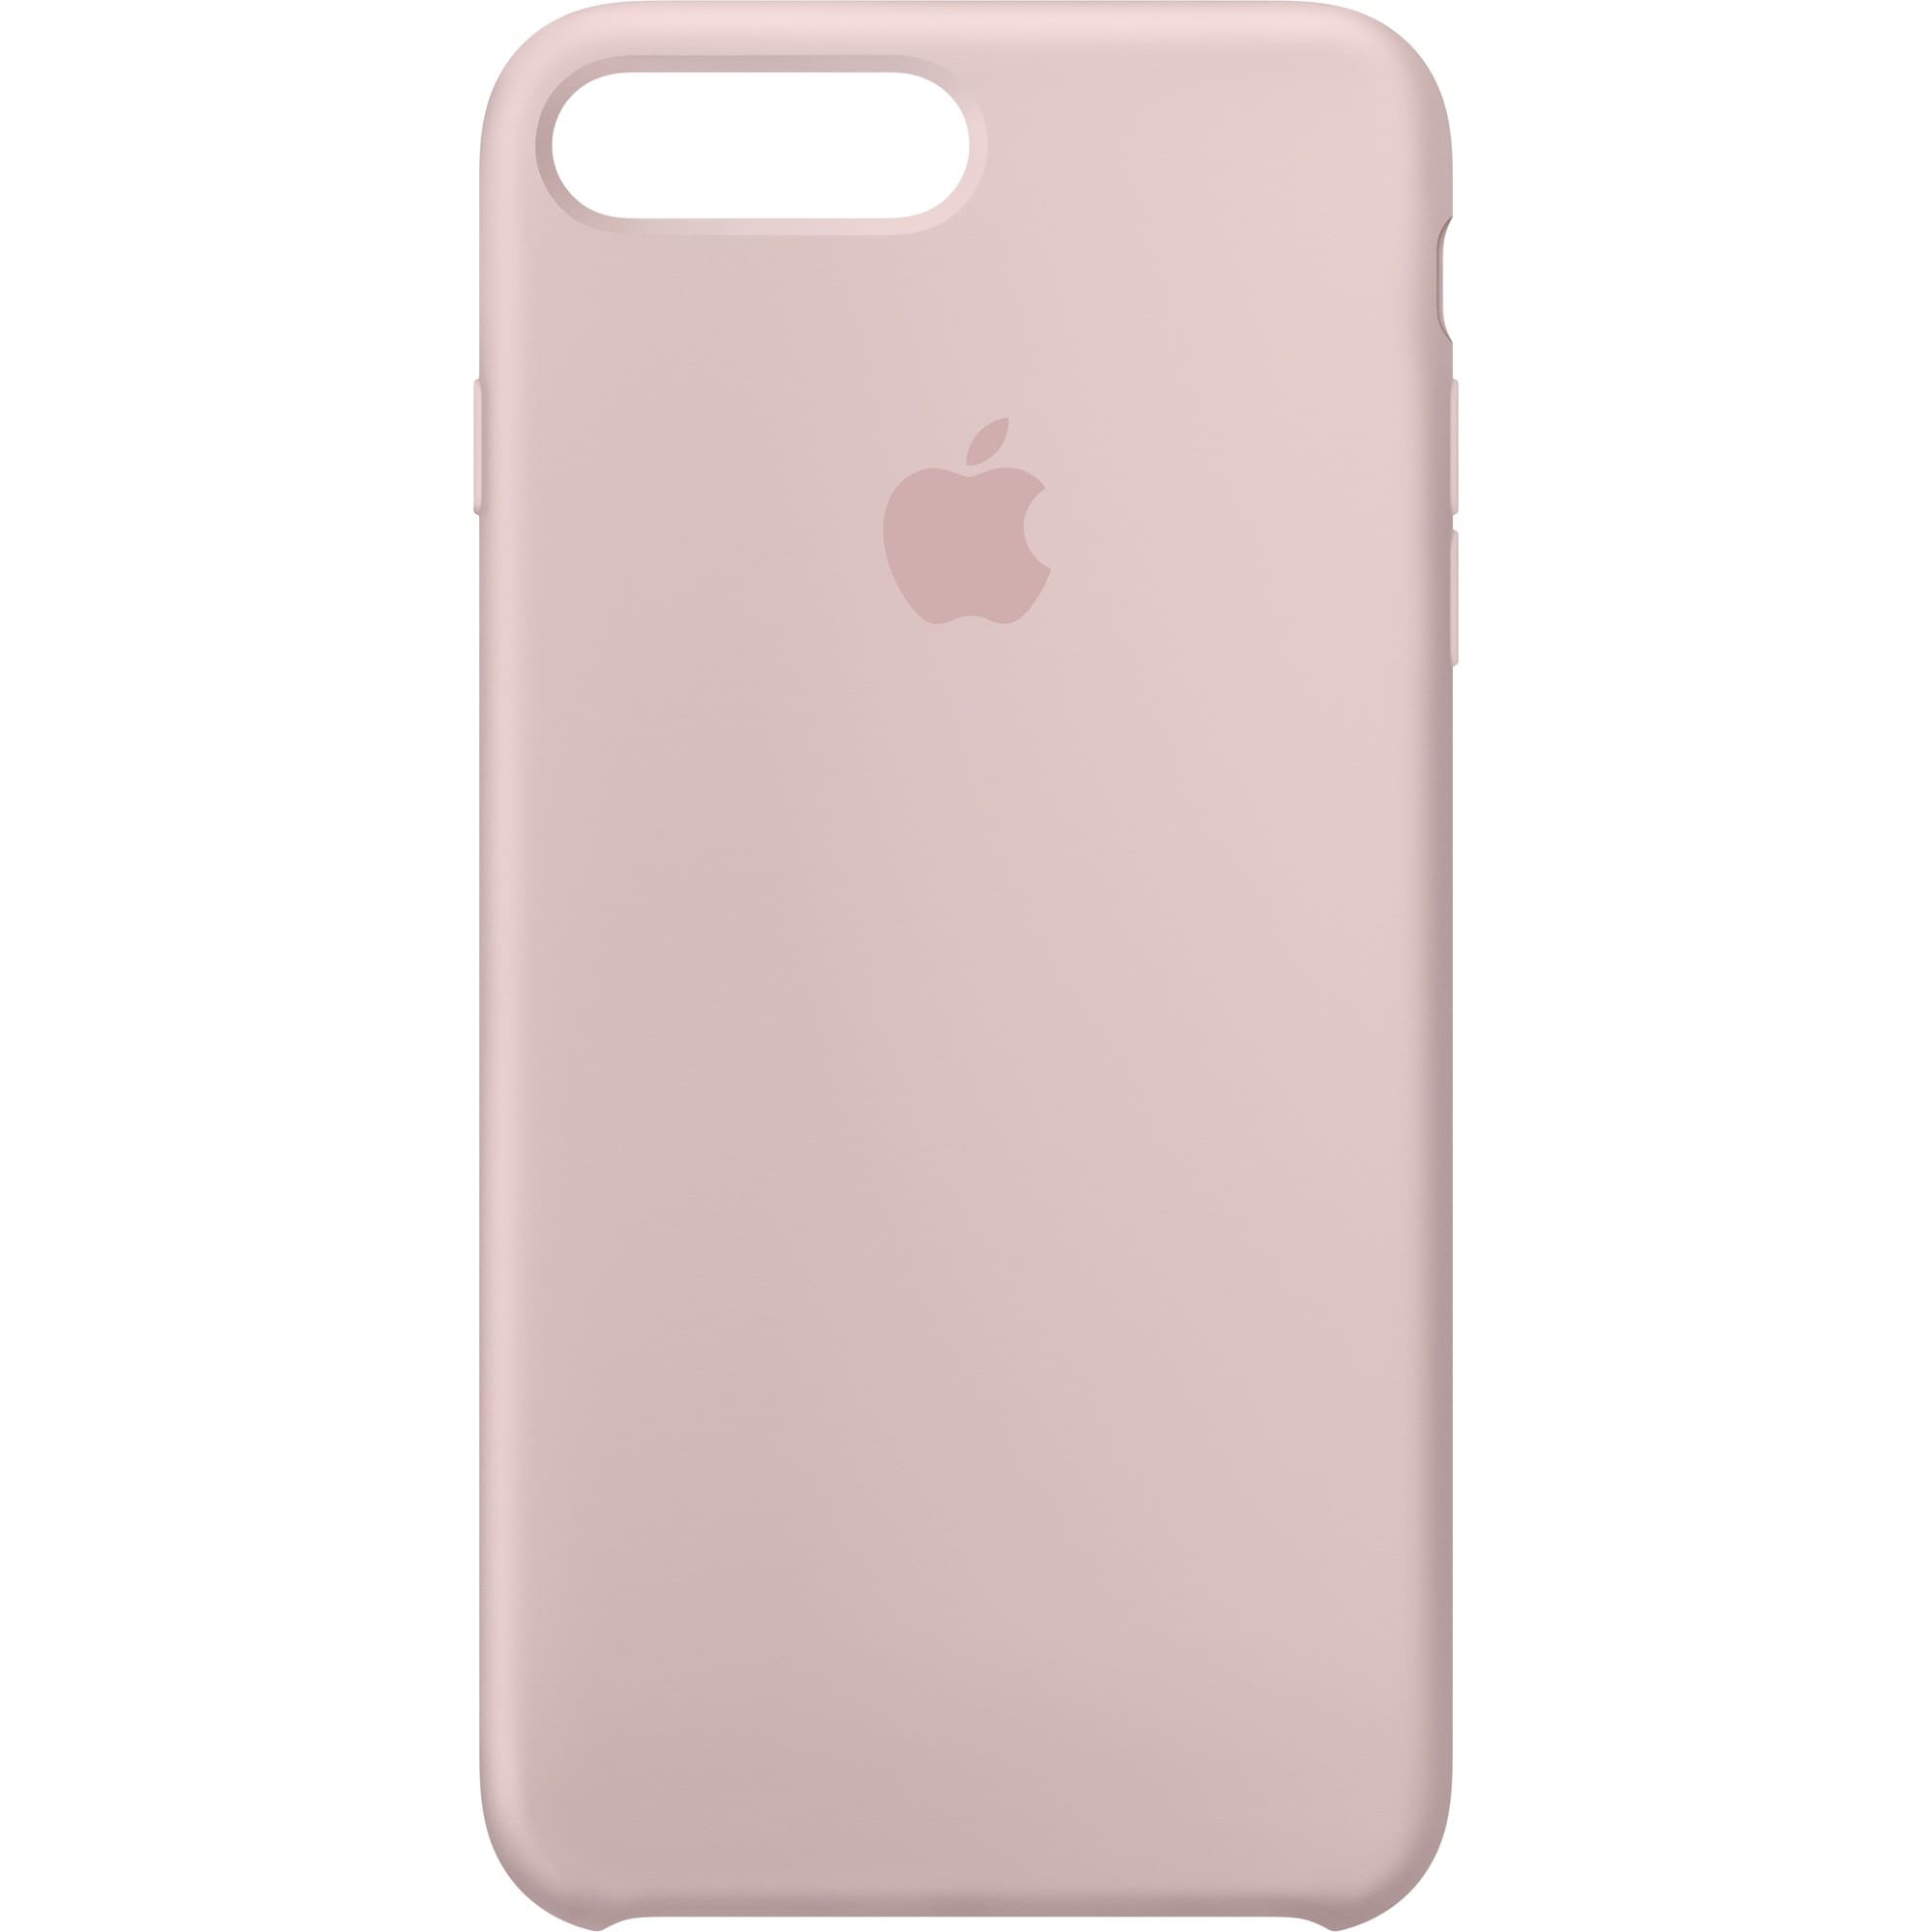 Apple iPhone 7 Plus silikondeksel (rosa sand) - Elkjøp